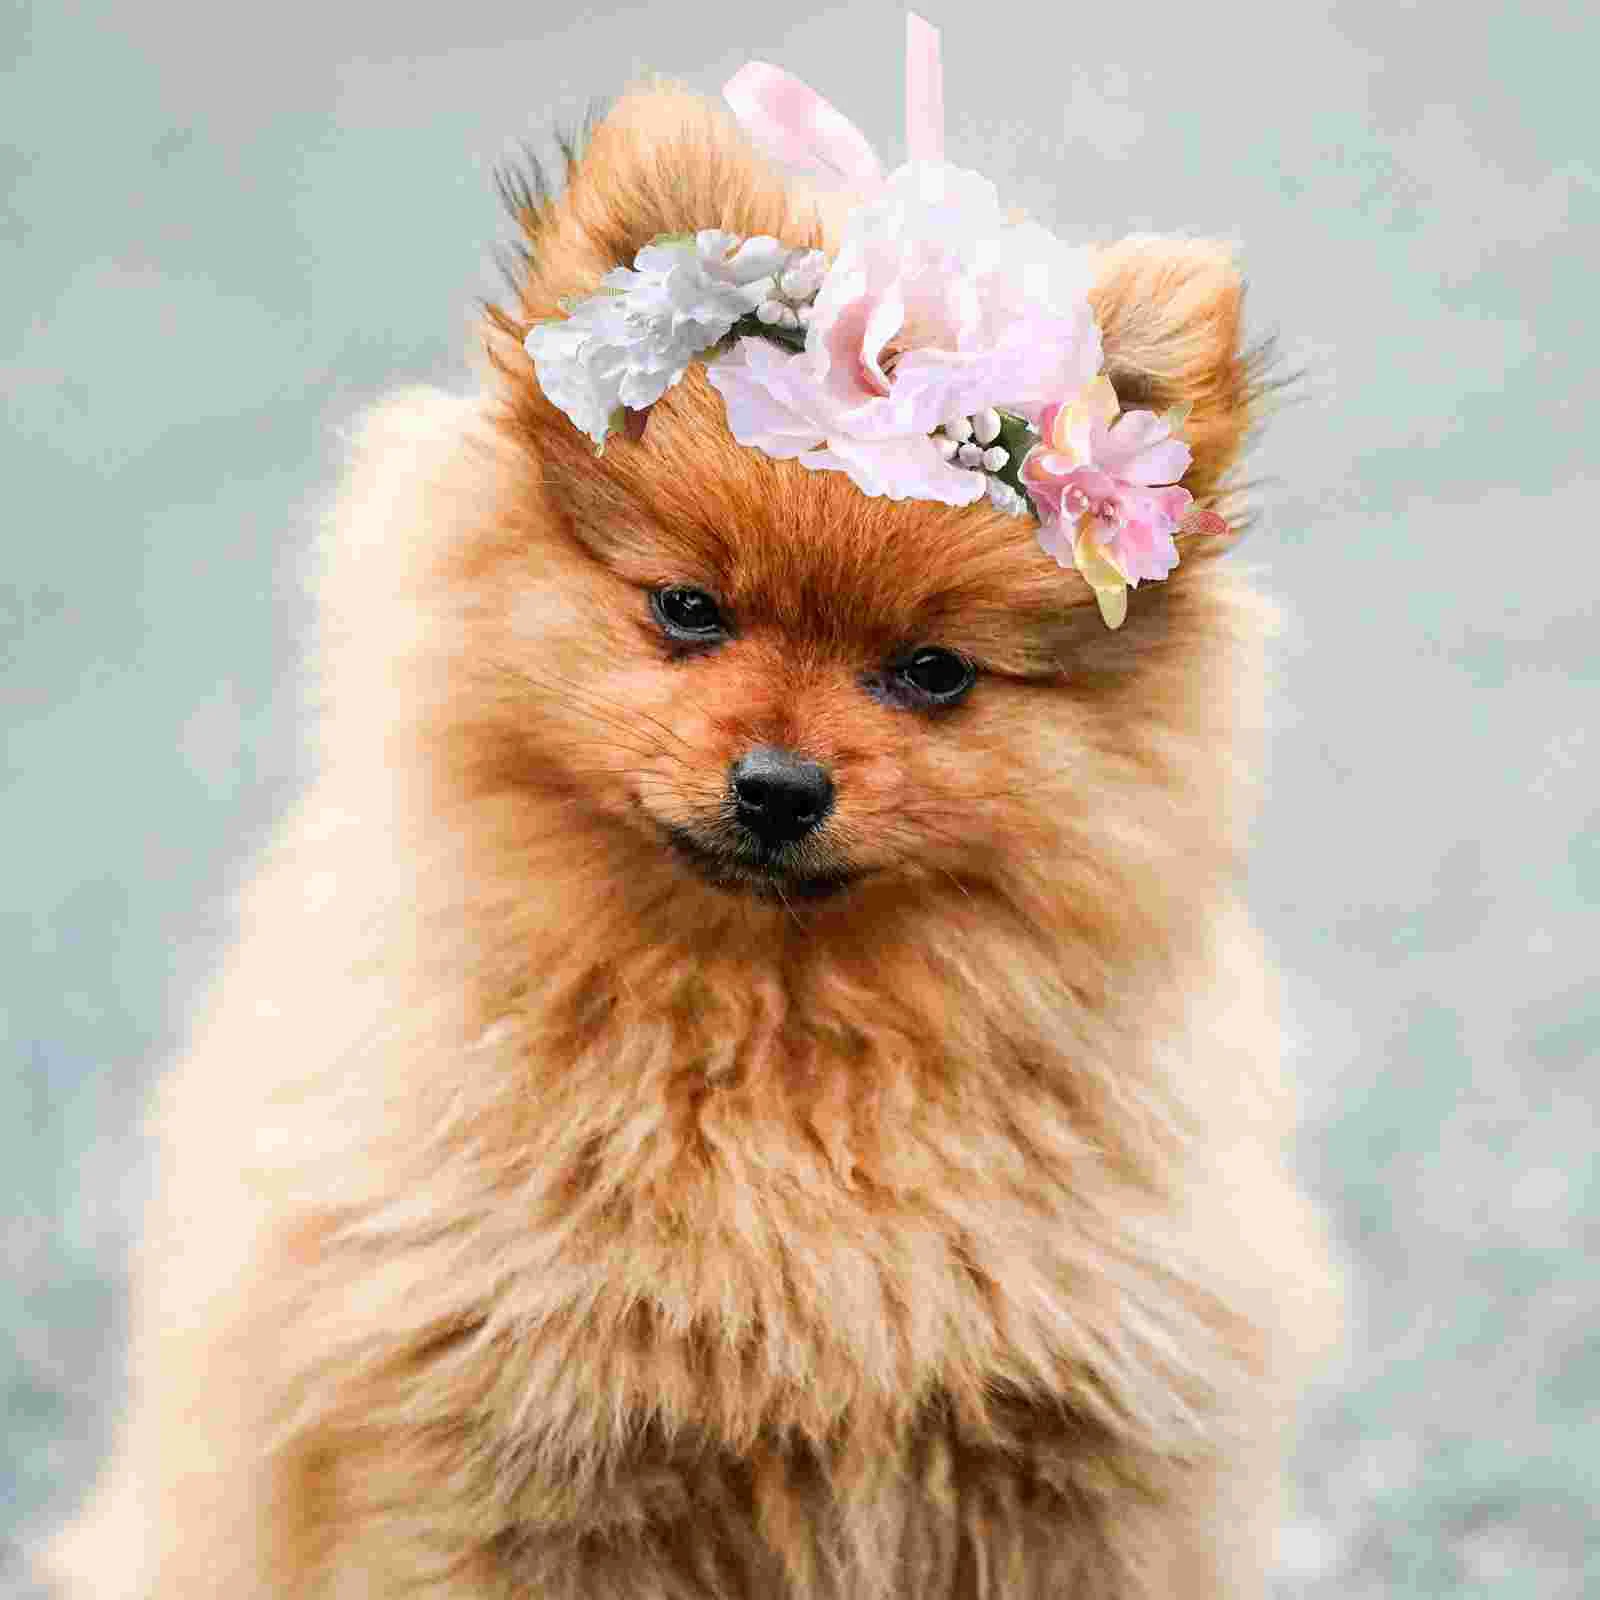 Цветочный ошейник для собаки, Цветочный головной убор для кошки, Цветочный ошейник для домашних животных, Цветочная повязка на голову - 4